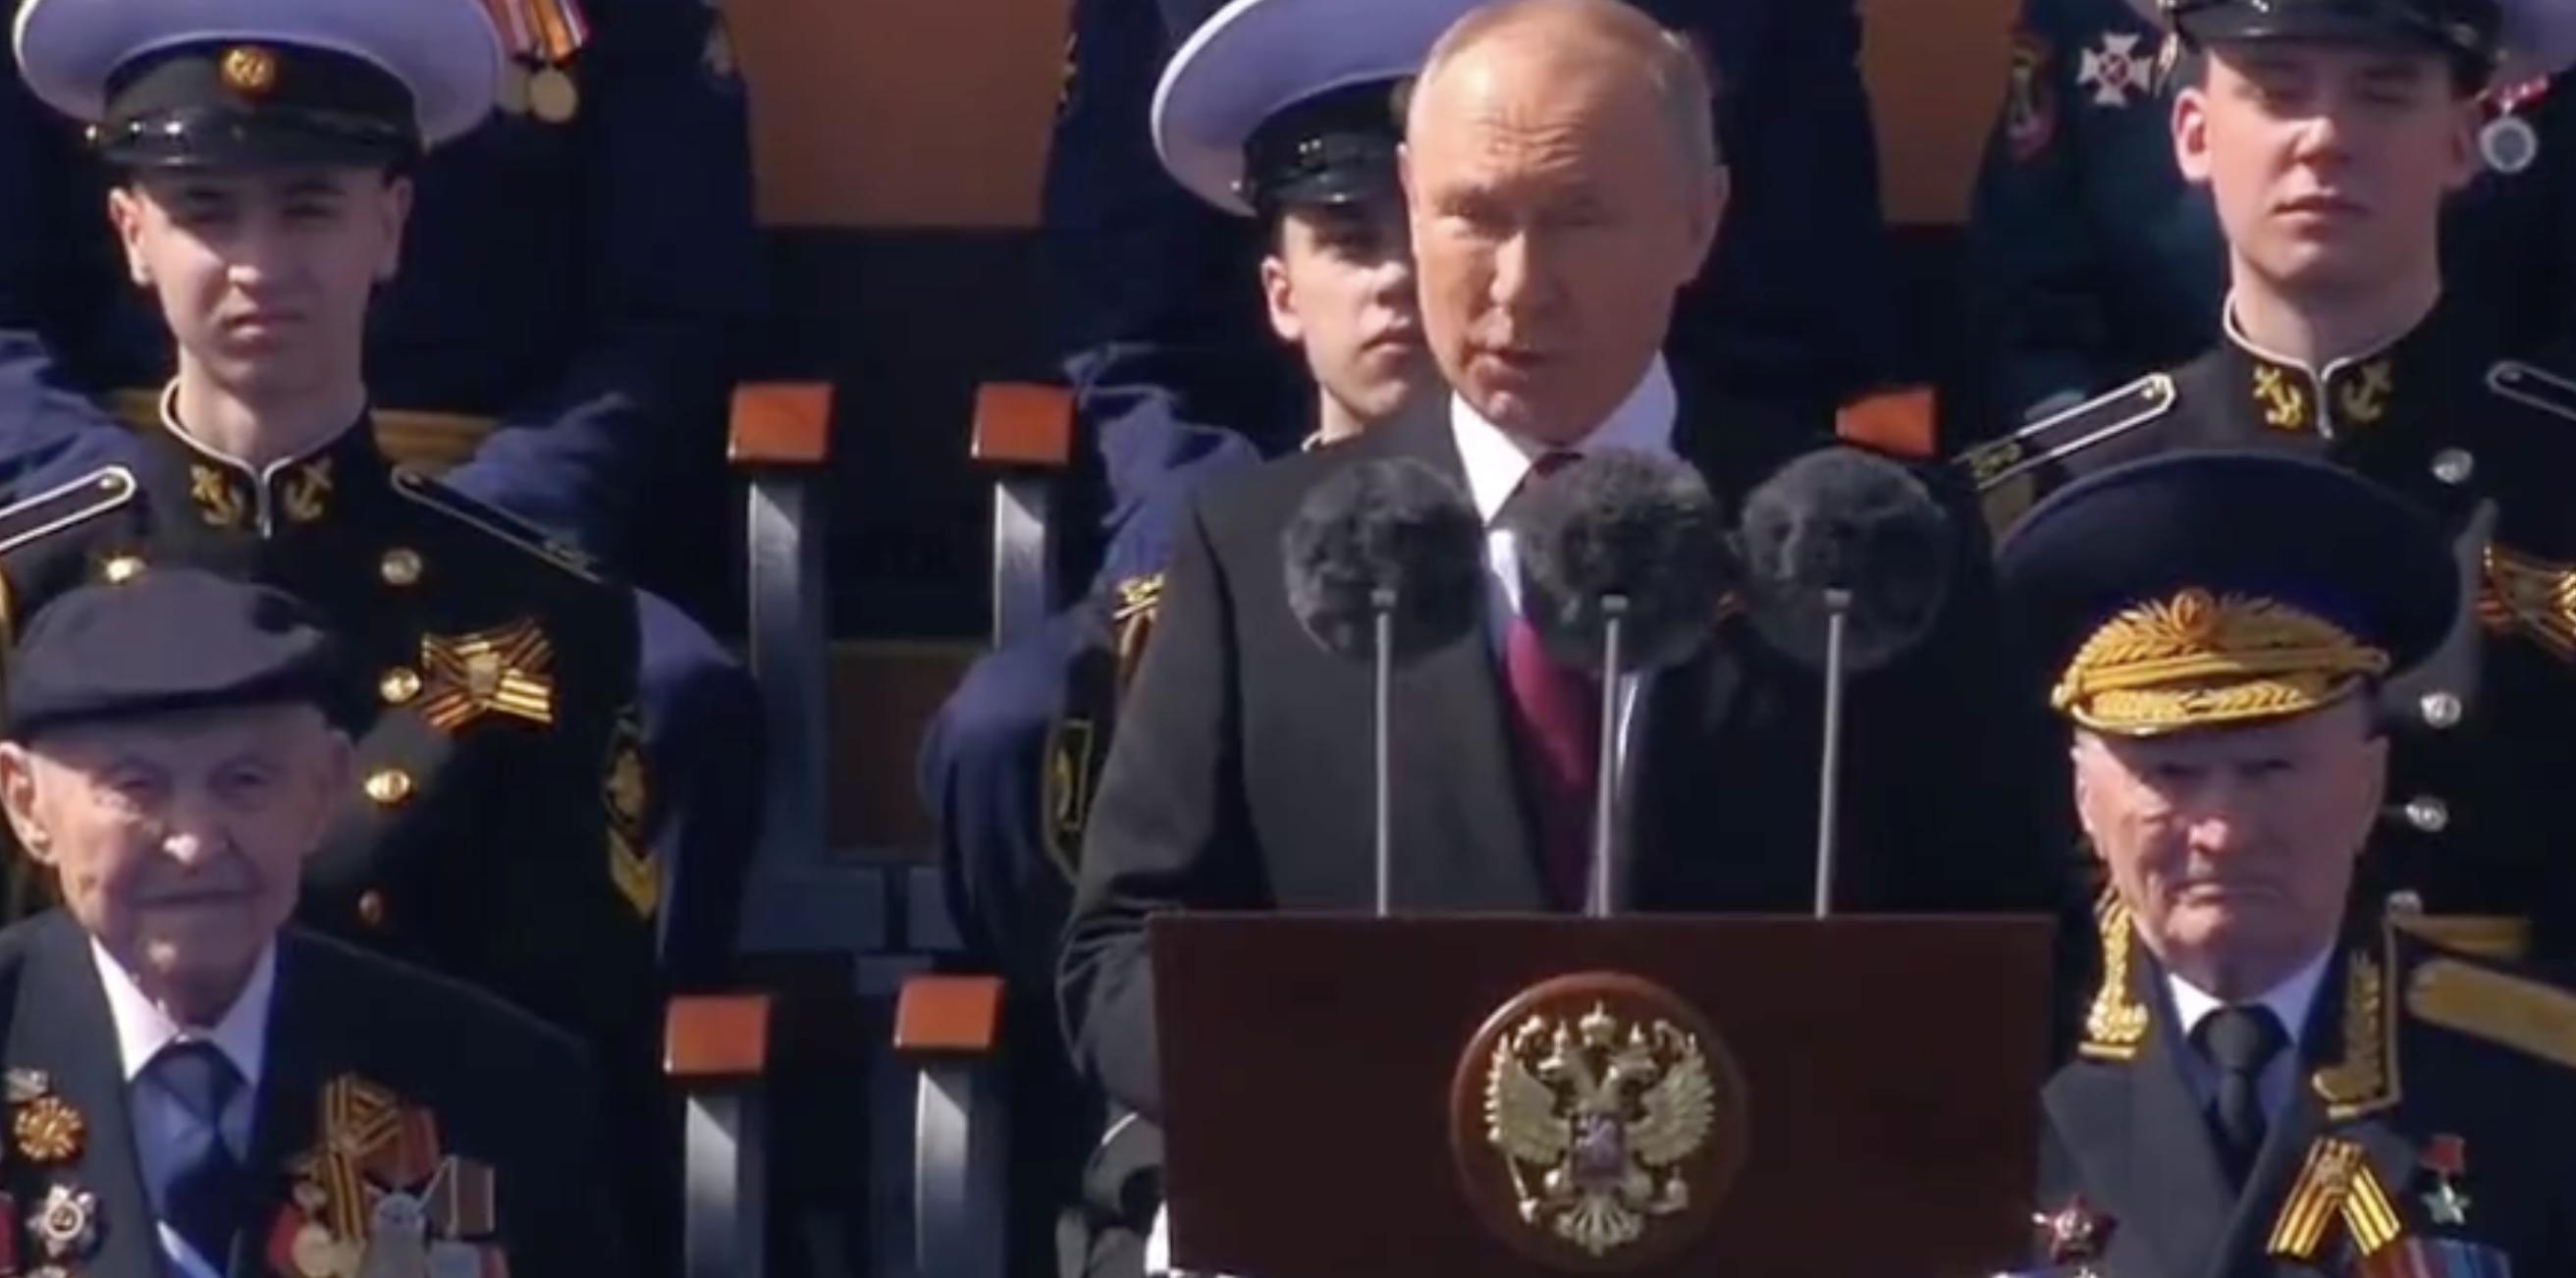 Ημέρα Νίκης στη Μόσχα και ο Πούτιν μίλησε για την καταστροφή «παραδοσιακών αξιών» από τη Δύση